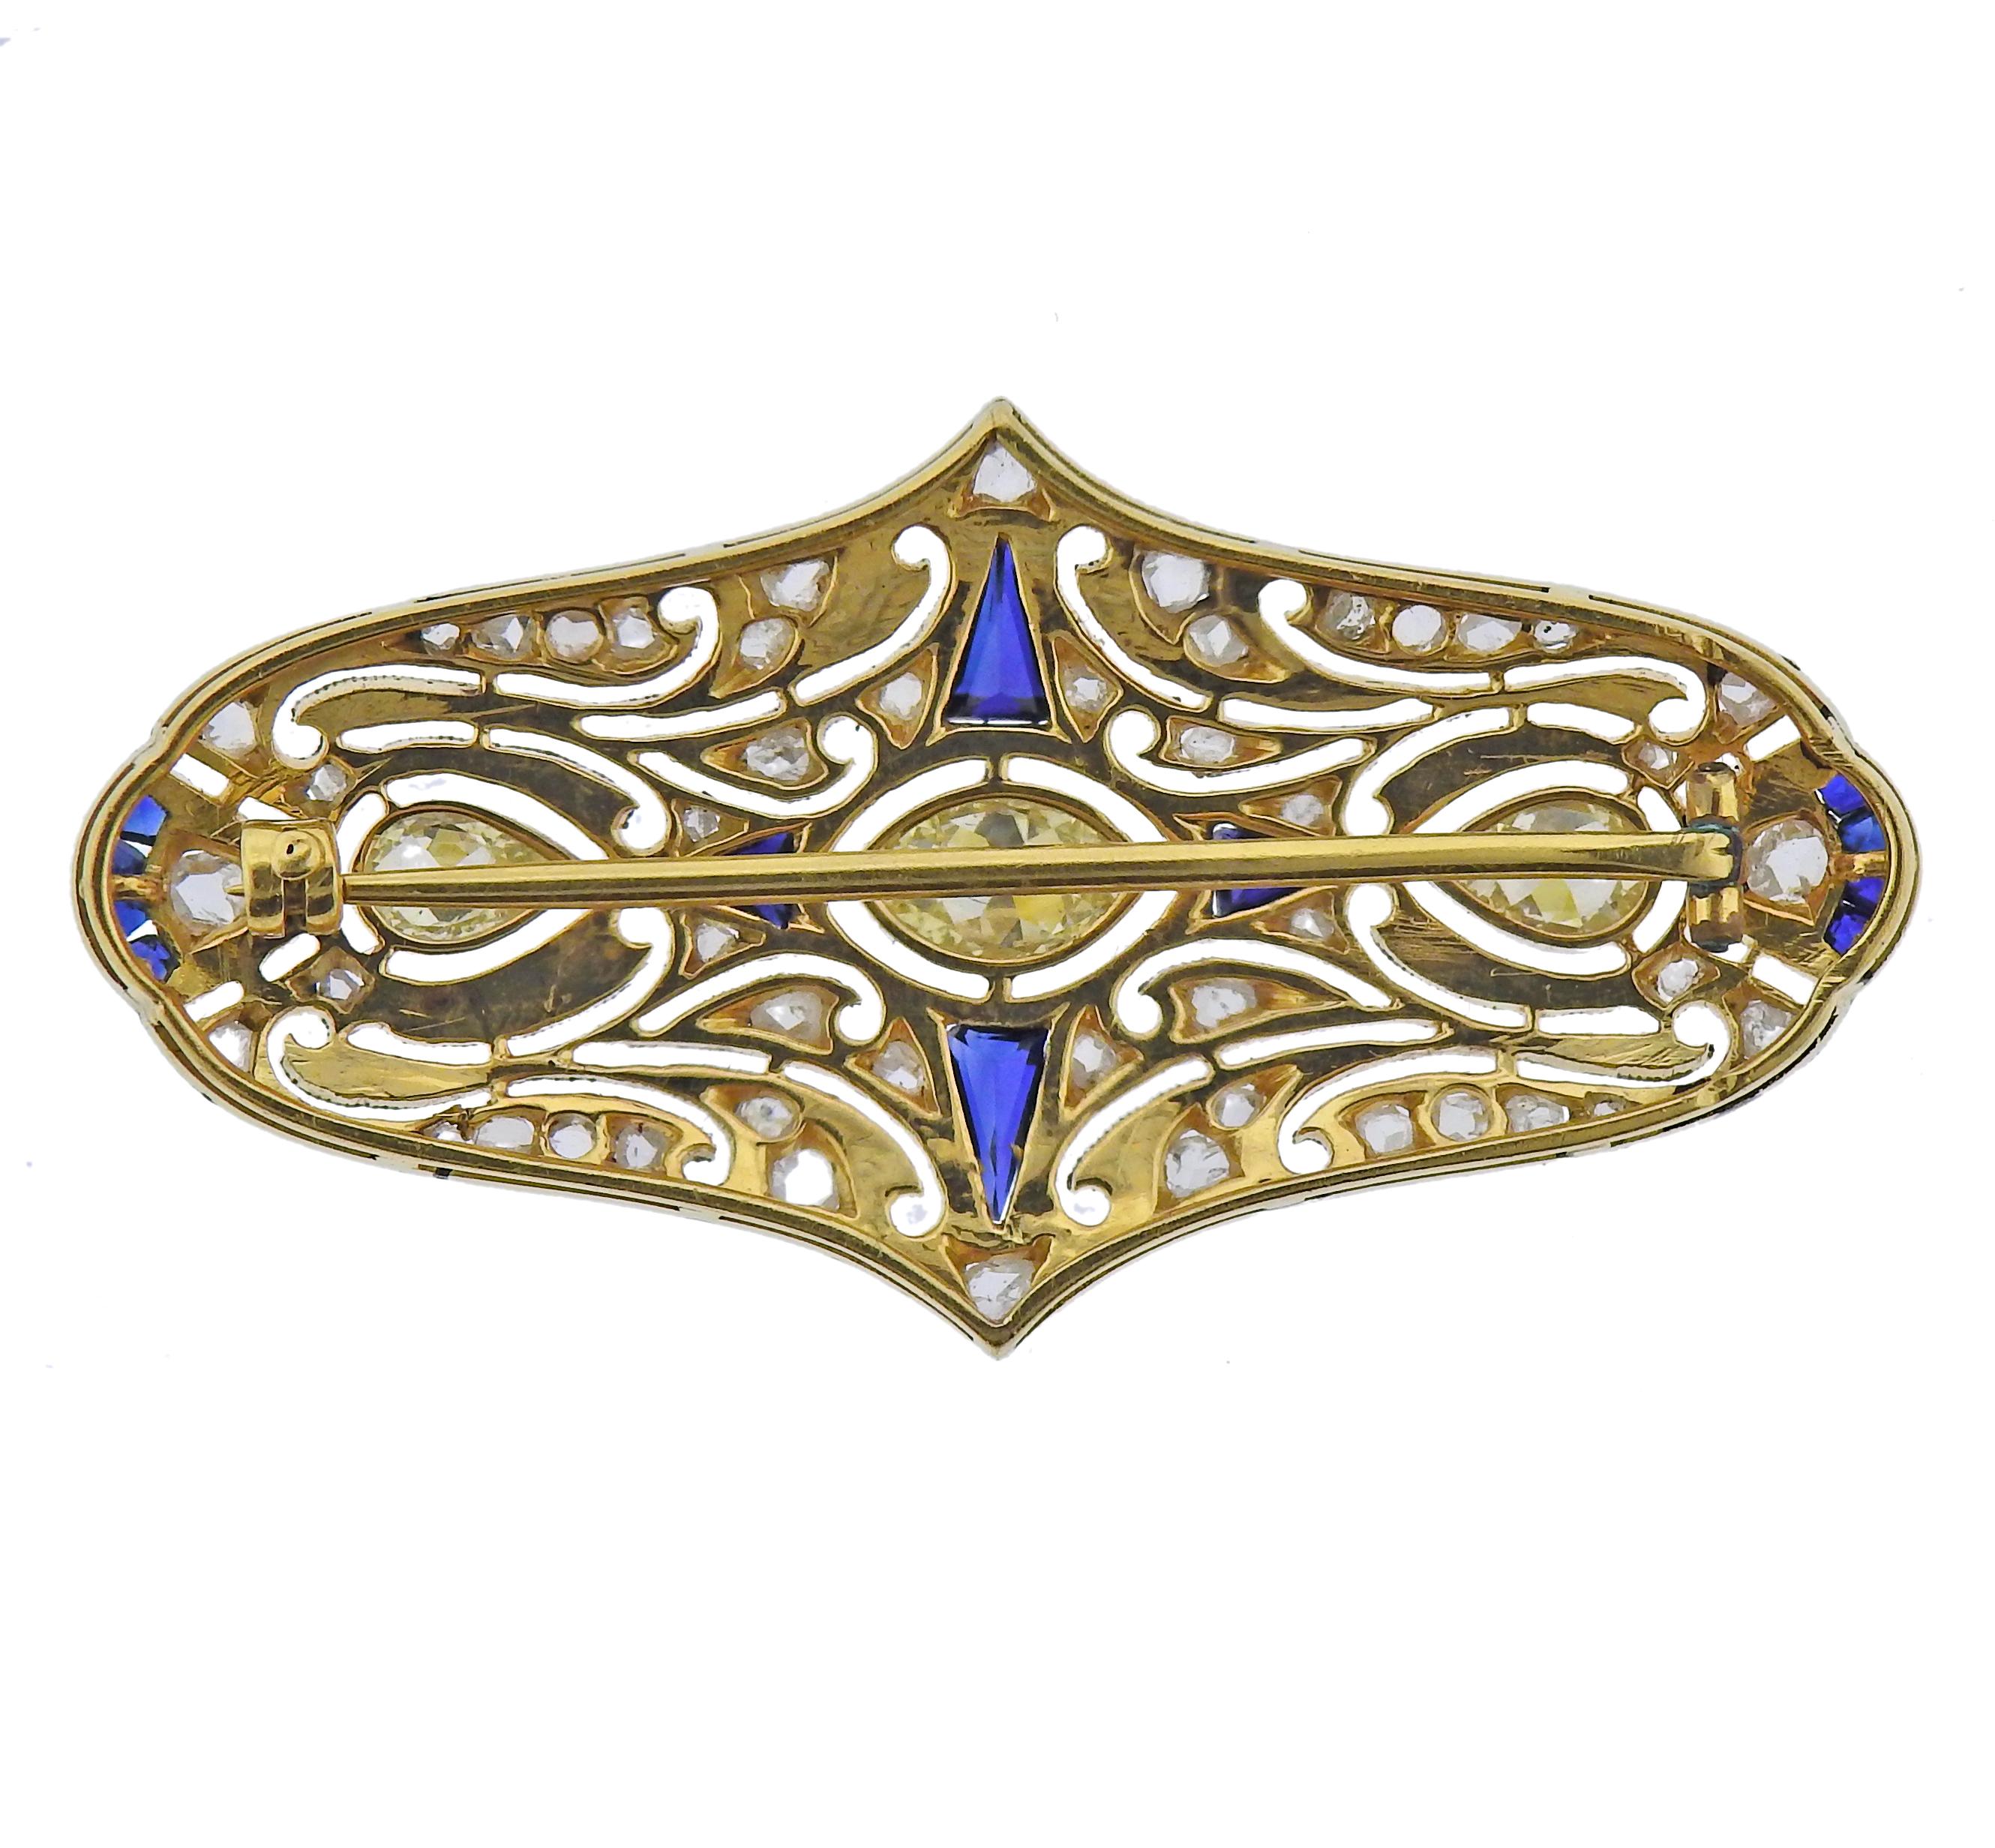 Art Deco Brosche aus 14k Gold, mit Saphiren und ca. 0,75ctw in drei großen Perlen und marquise 3 Diamanten, umgeben von kleineren Diamanten im Rosenschliff. Die Brosche misst 45 mm x 25 mm. Gewicht - 7,7 Gramm.